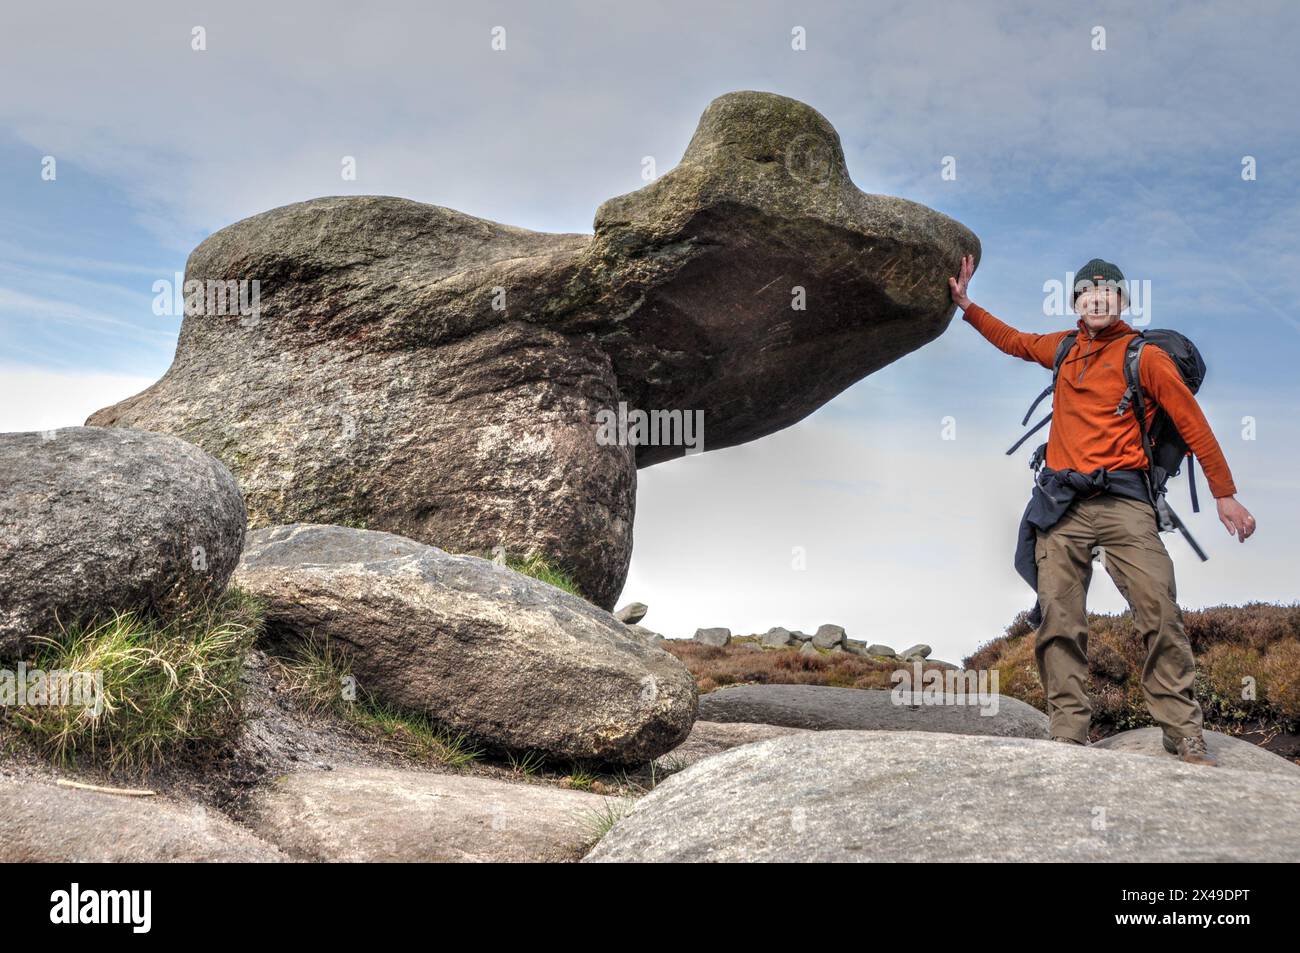 Massive, seltsame, erodierte Felsformationen in der Gegend, die als Woolpacks am Kinder Scout im Peak District bekannt ist. Sieht aus wie ein Hund oder Knochen. Stockfoto